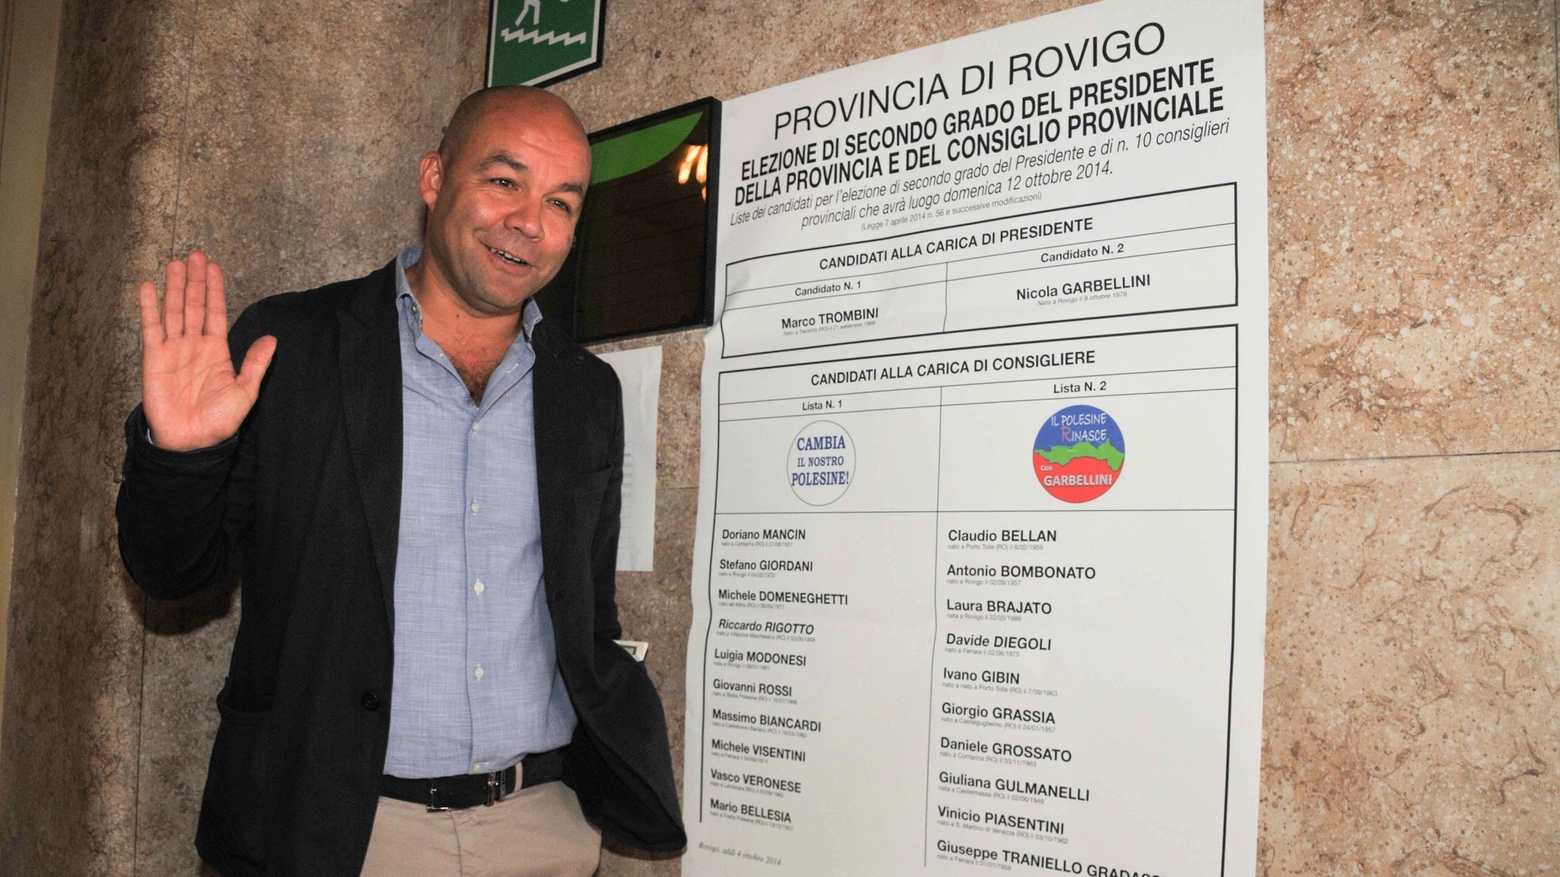 Marco Trombini, nuovo presidente della Provincia di Rovigo (foto Donzelli)